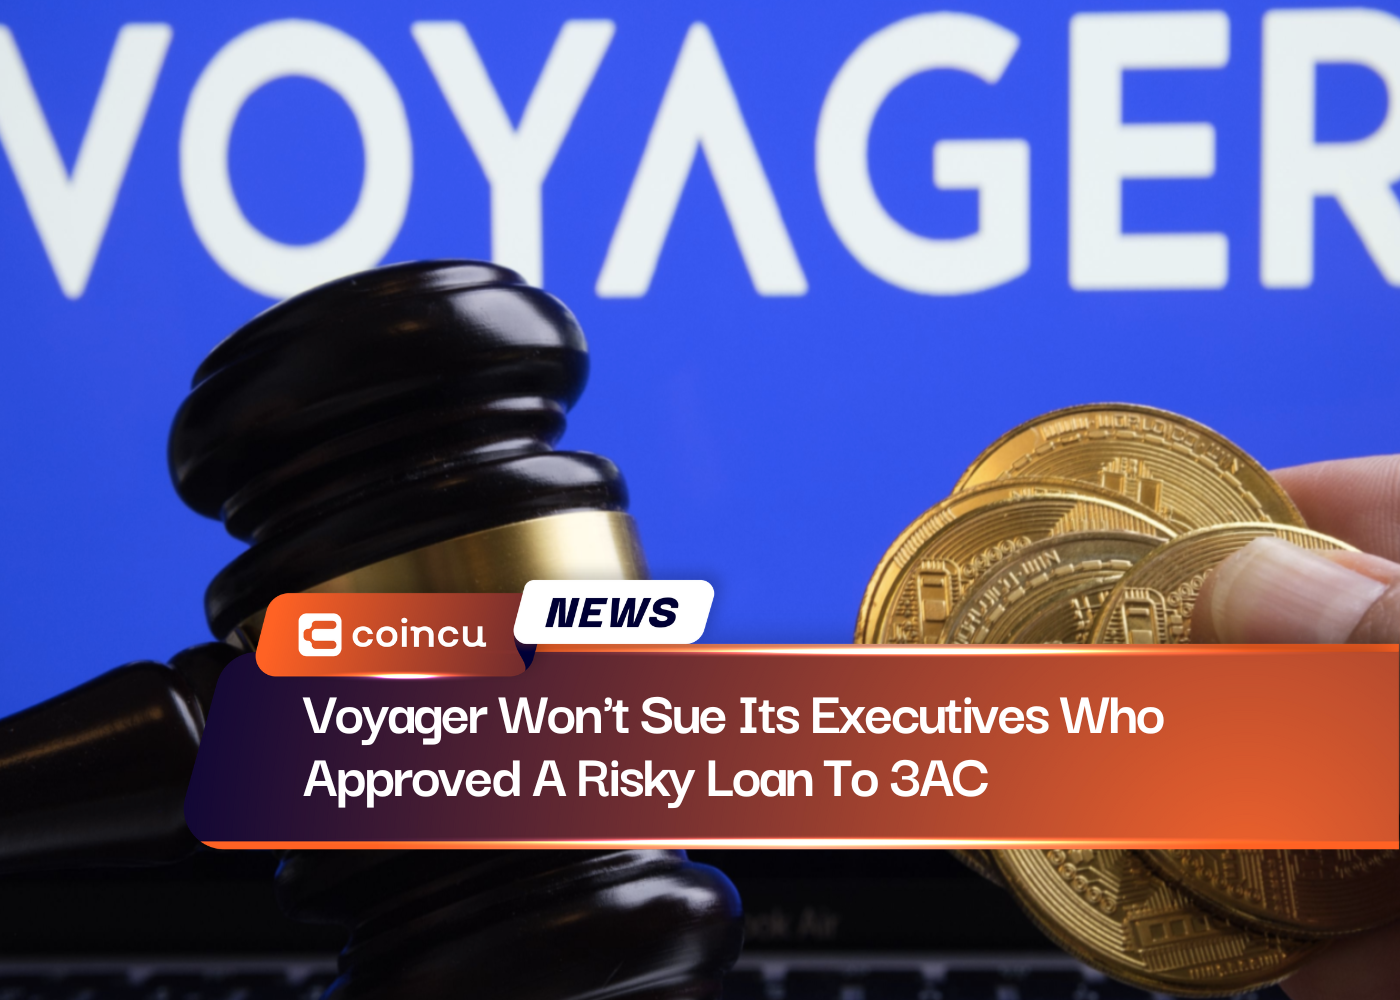 Voyager wird seine Führungskräfte nicht verklagen, die 3AC einen riskanten Kredit genehmigt haben